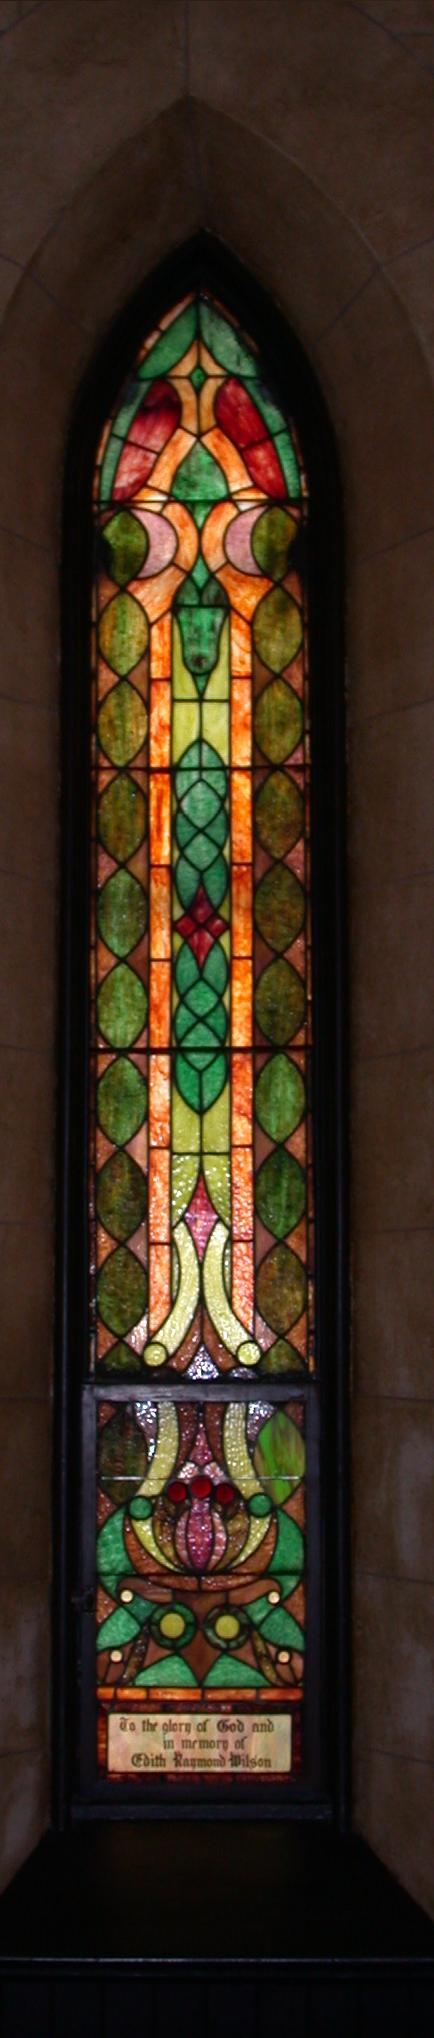 St. Cecelia Guild Window